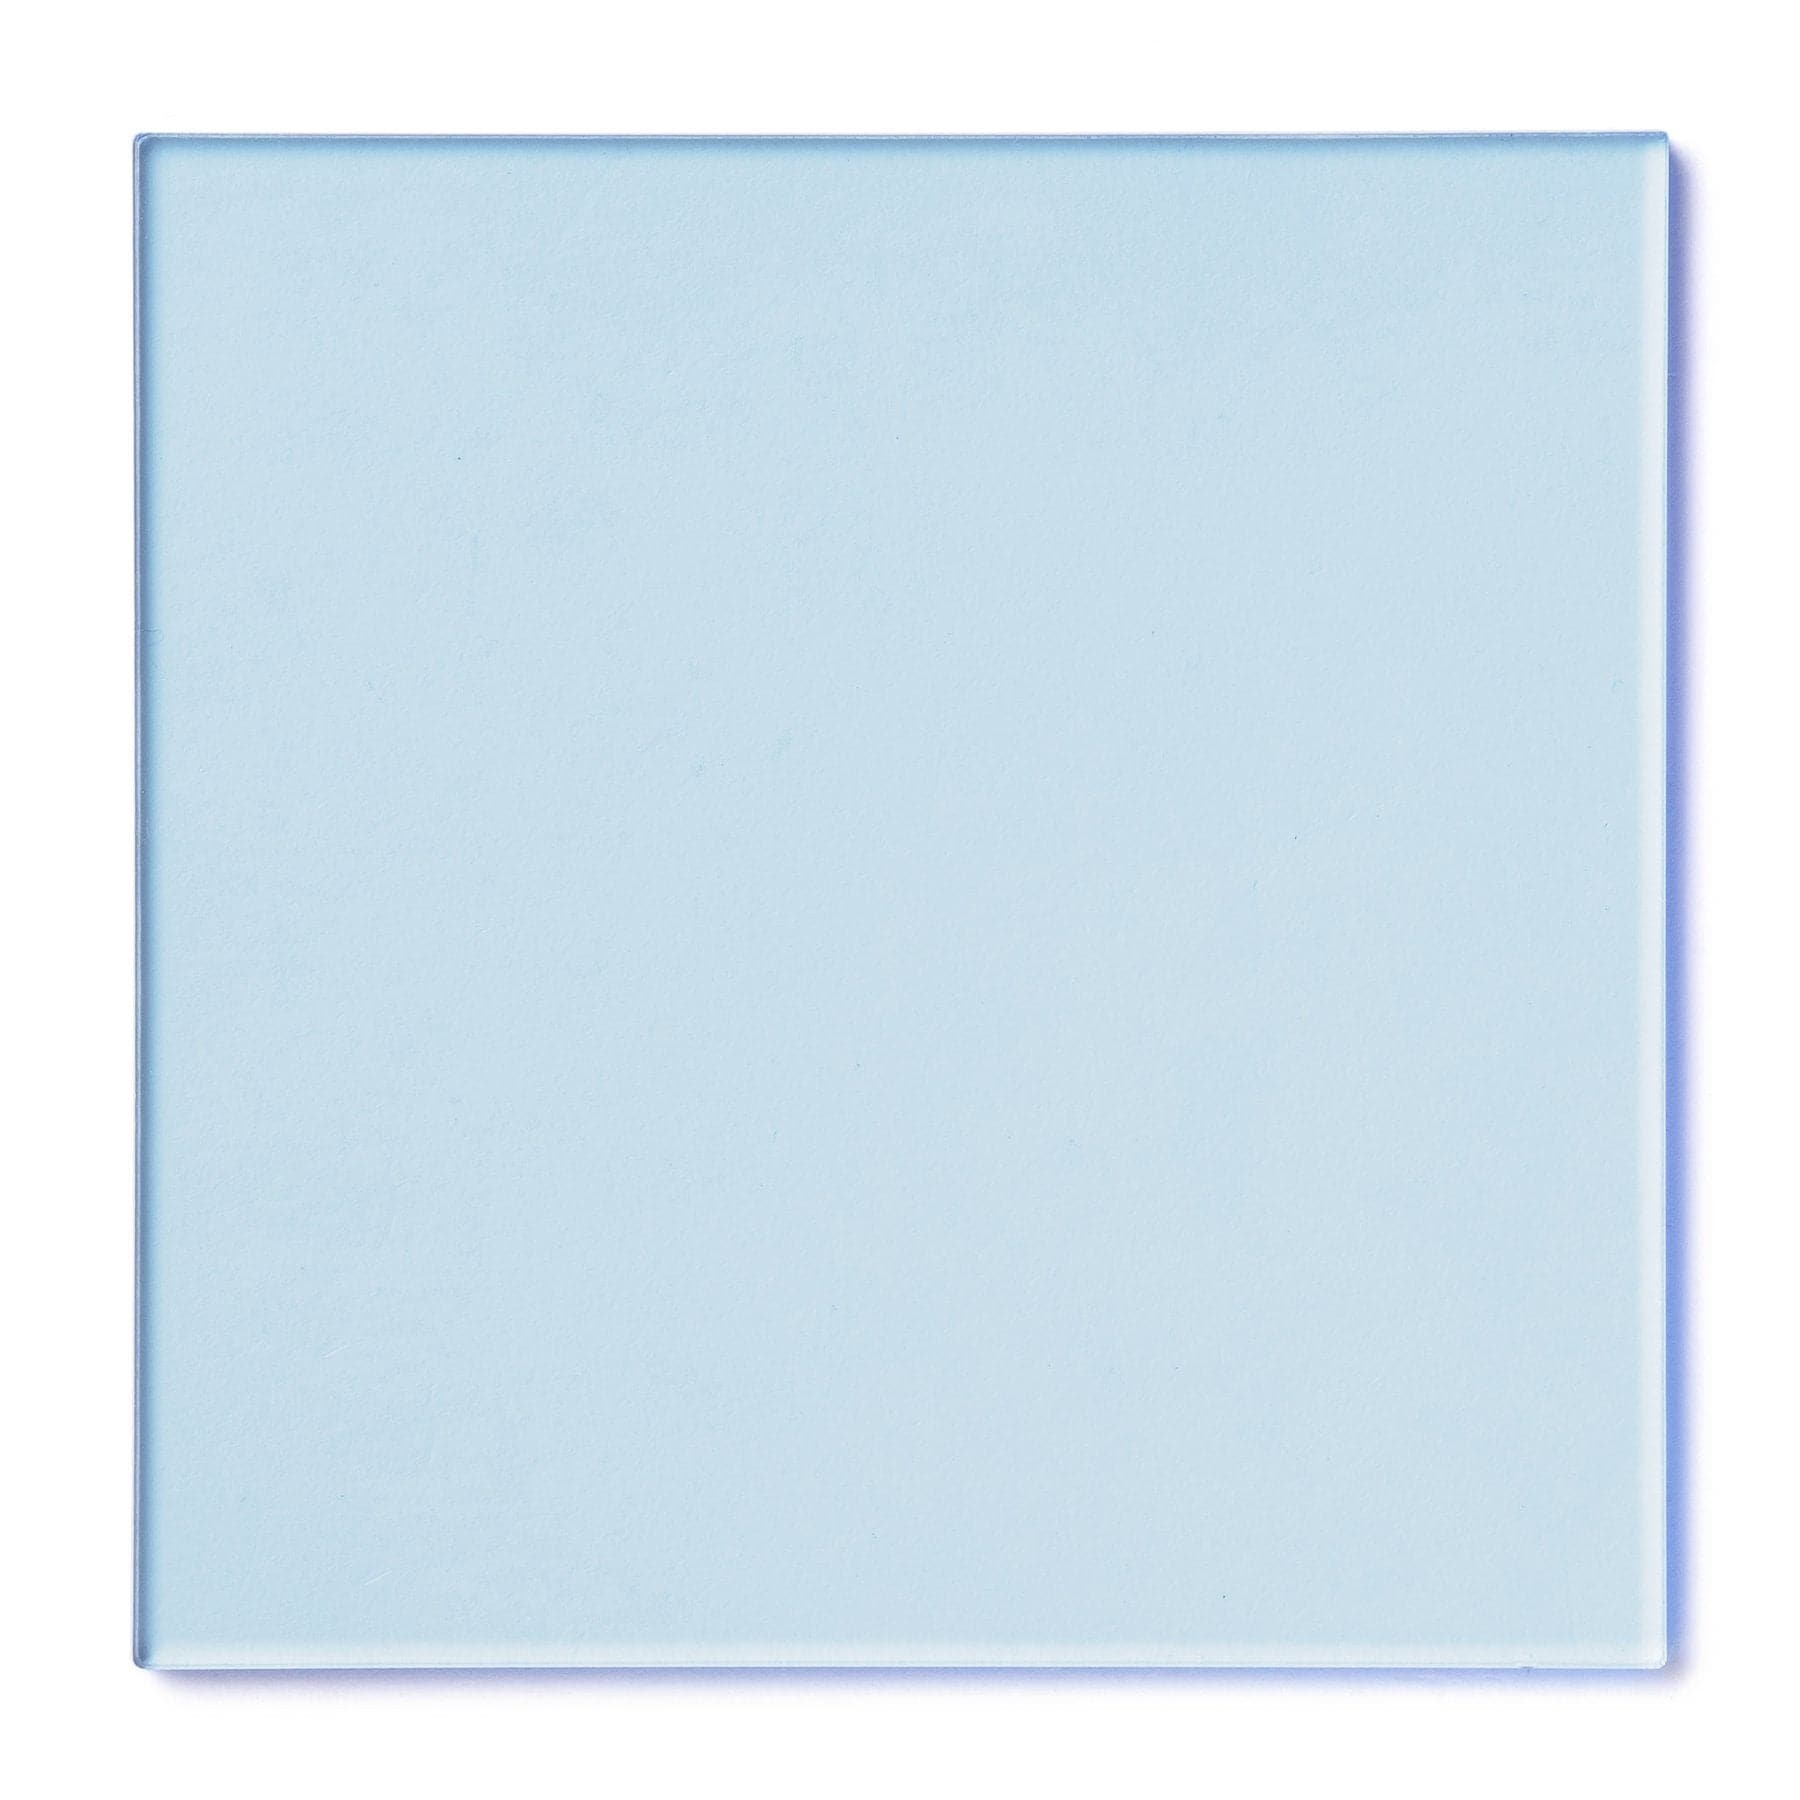 Acrylic Sheet 1/8" Blue Fluorescent #9092